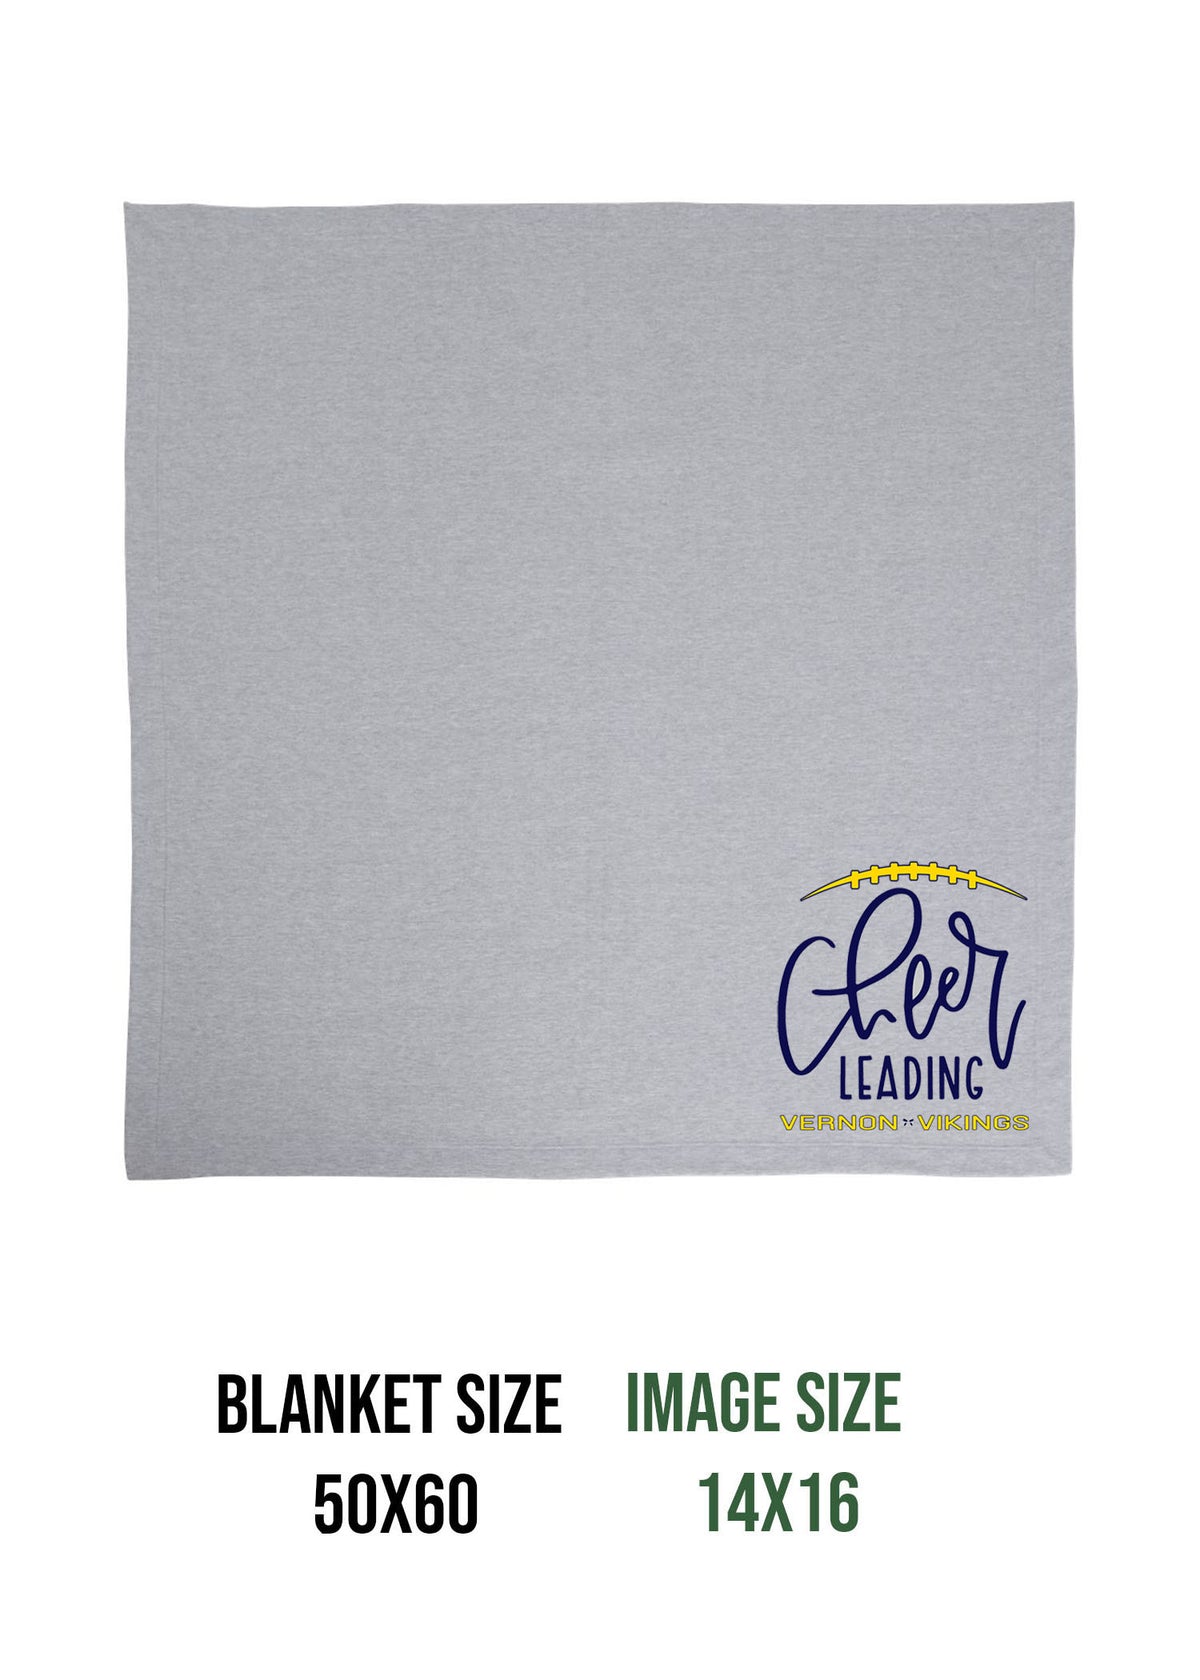 Vikings Cheer design 5 Blanket